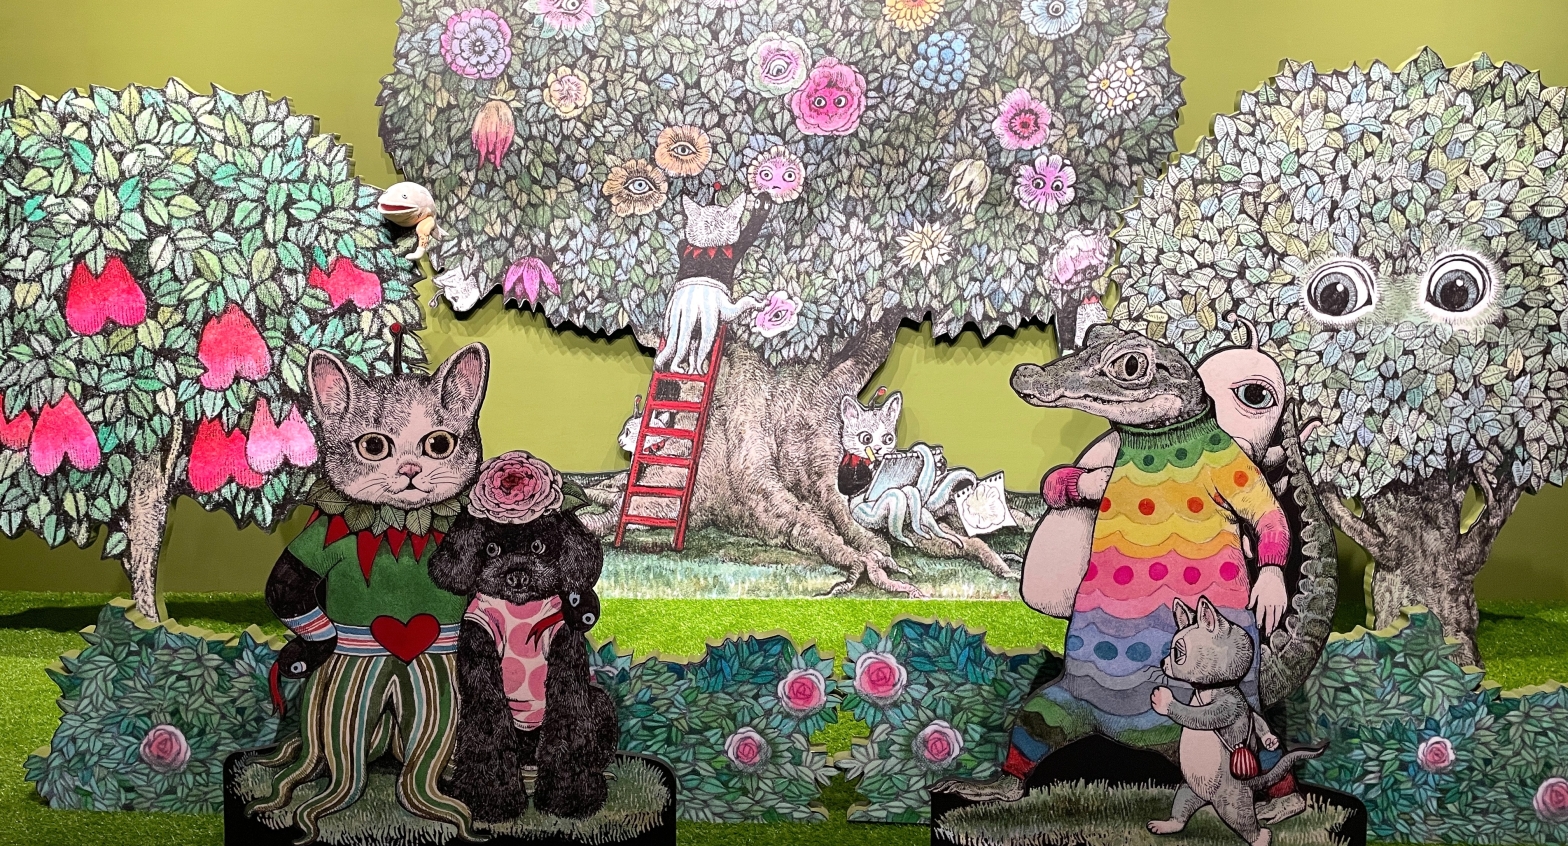 ヒグチユウコ『奇幻動物森林』樋口裕子展画集 【限定サイン版】台湾　A5サイズがあります